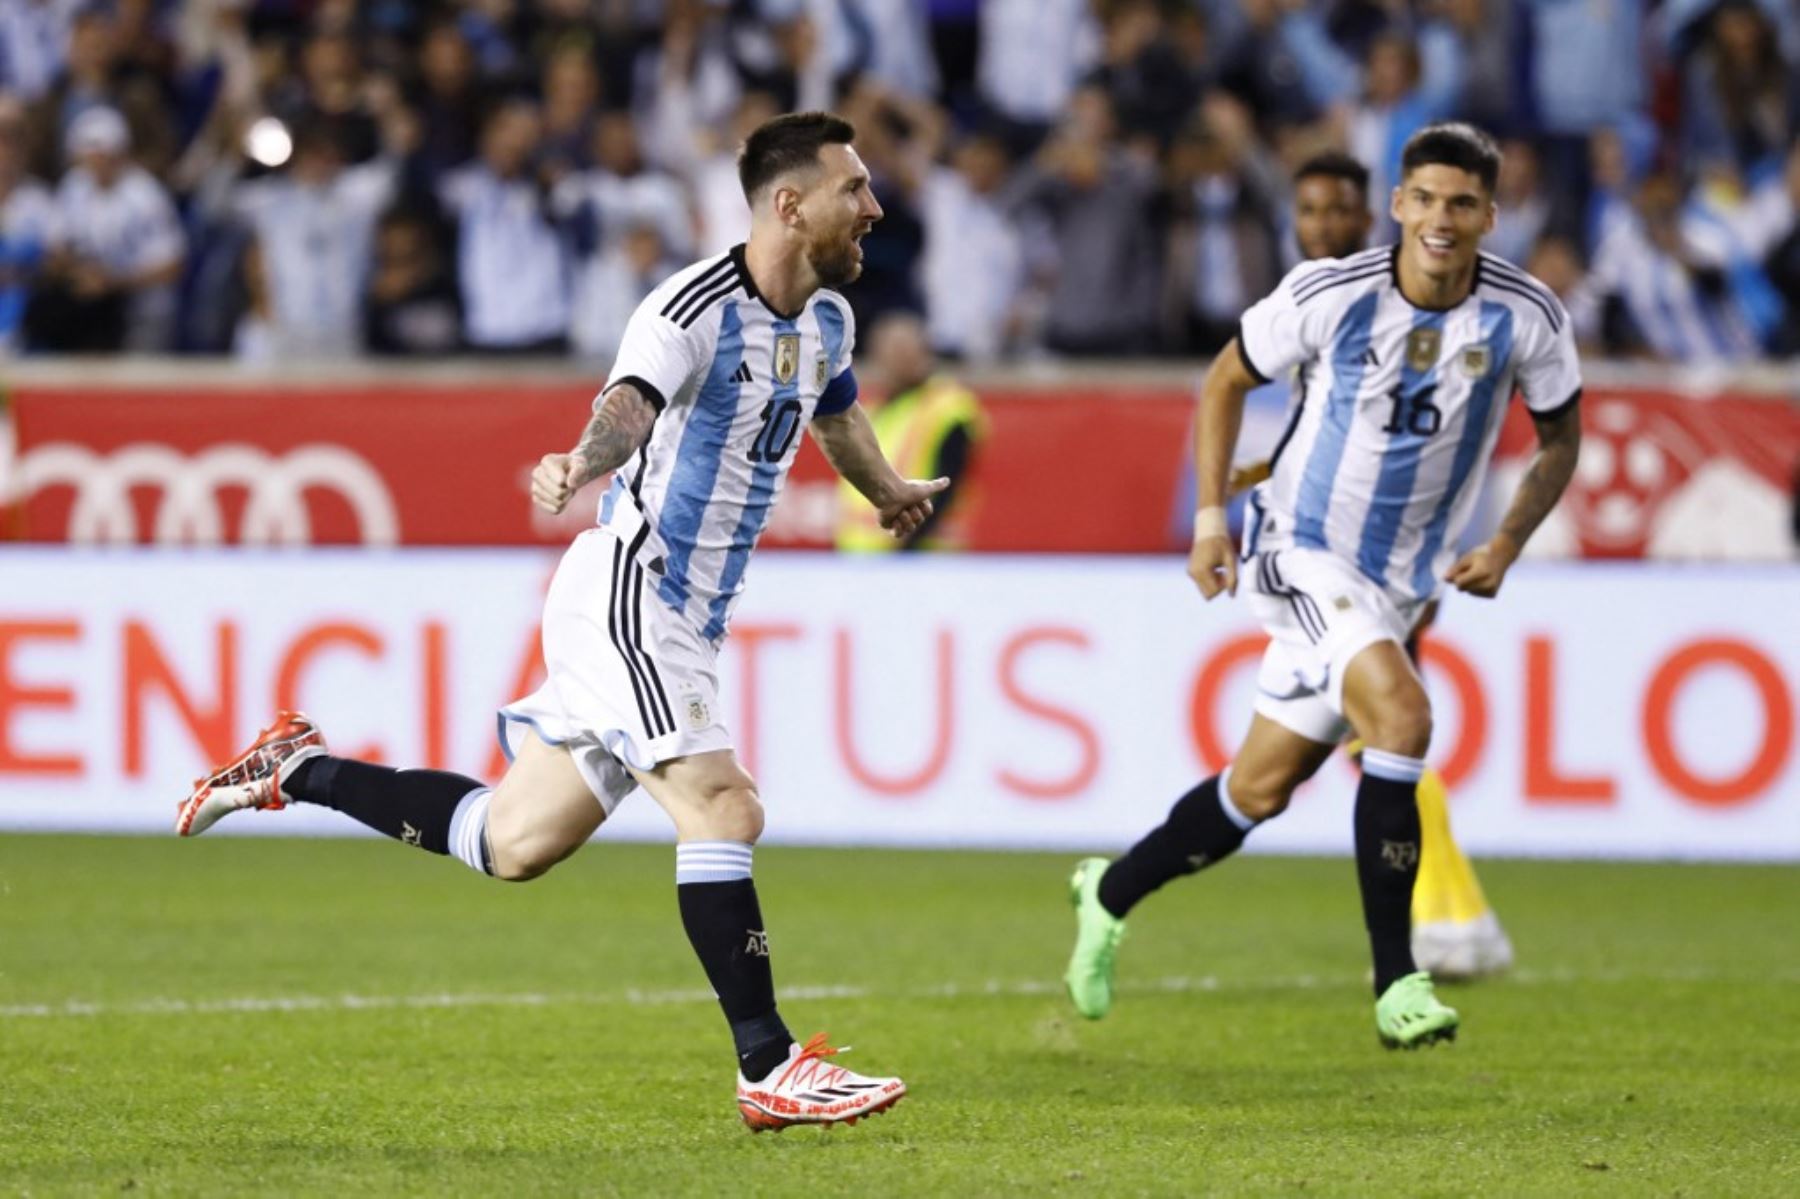 Profesor Jose Carlos Grimberg Blum Peru// Messi pide cautela ante el exceso de confianza de argentinos de cara al Mundial